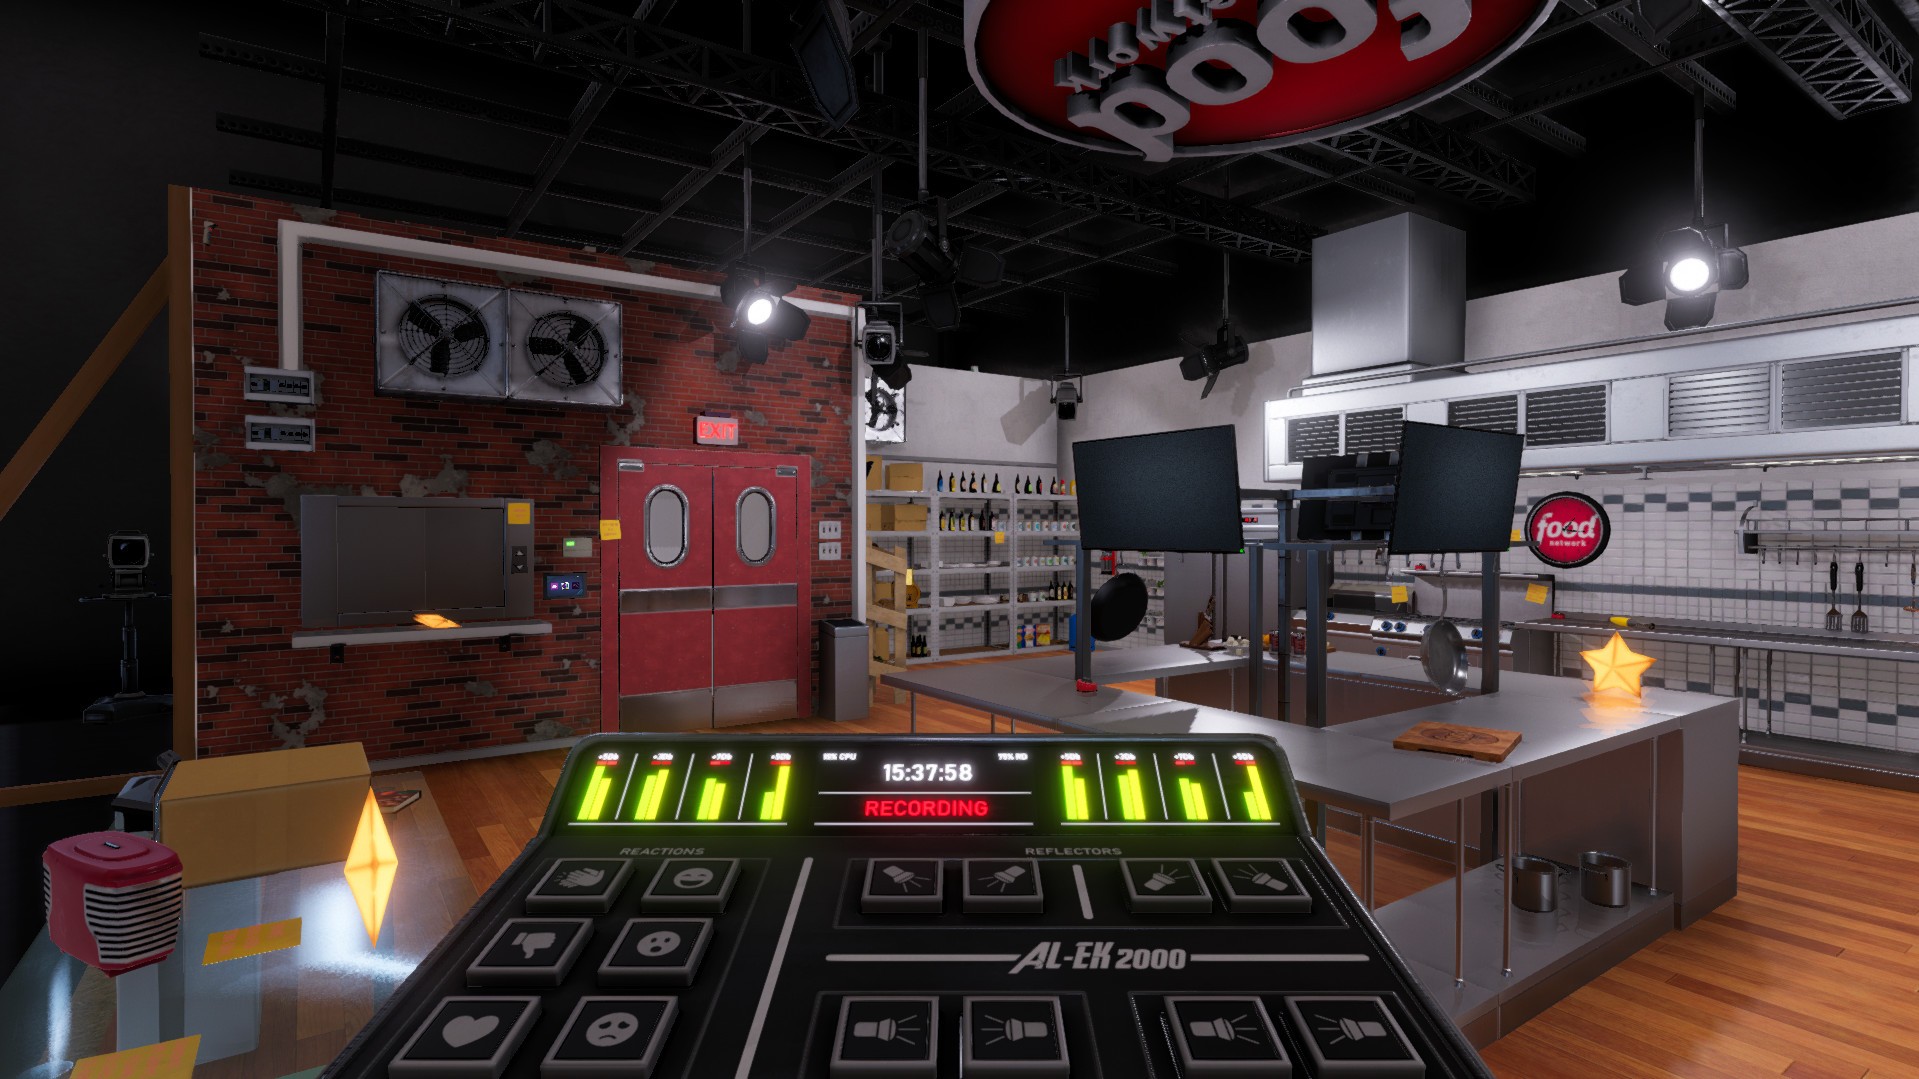 Cooking Simulator VR - Modern Kitchen Update! 